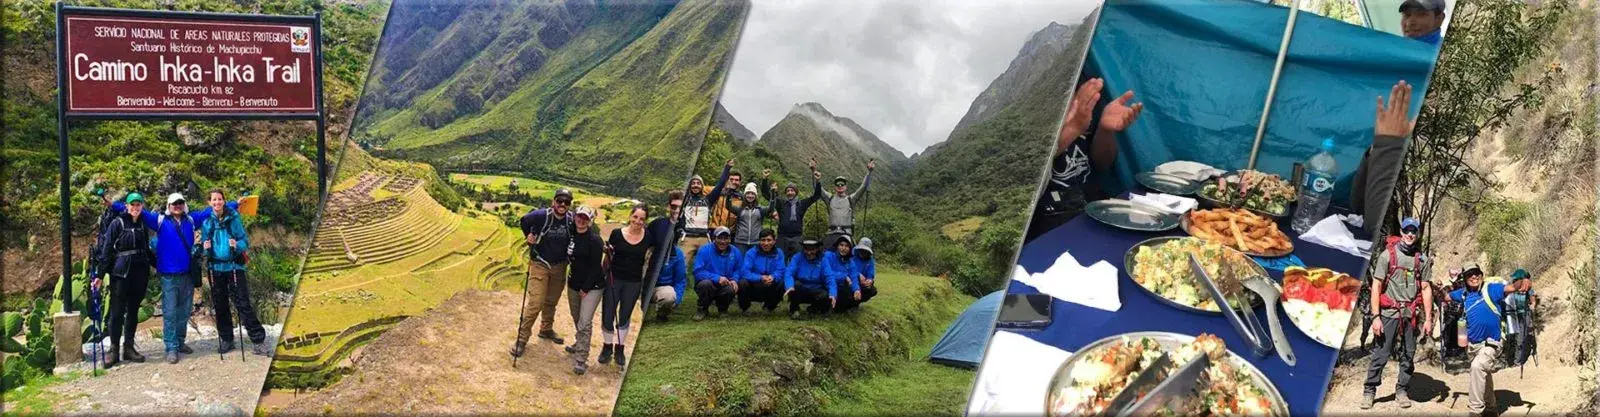 Inca Trail to Machu Picchu 5 Days and 4 Nights - Local Trekkers Peru - Local Trekkers Peru